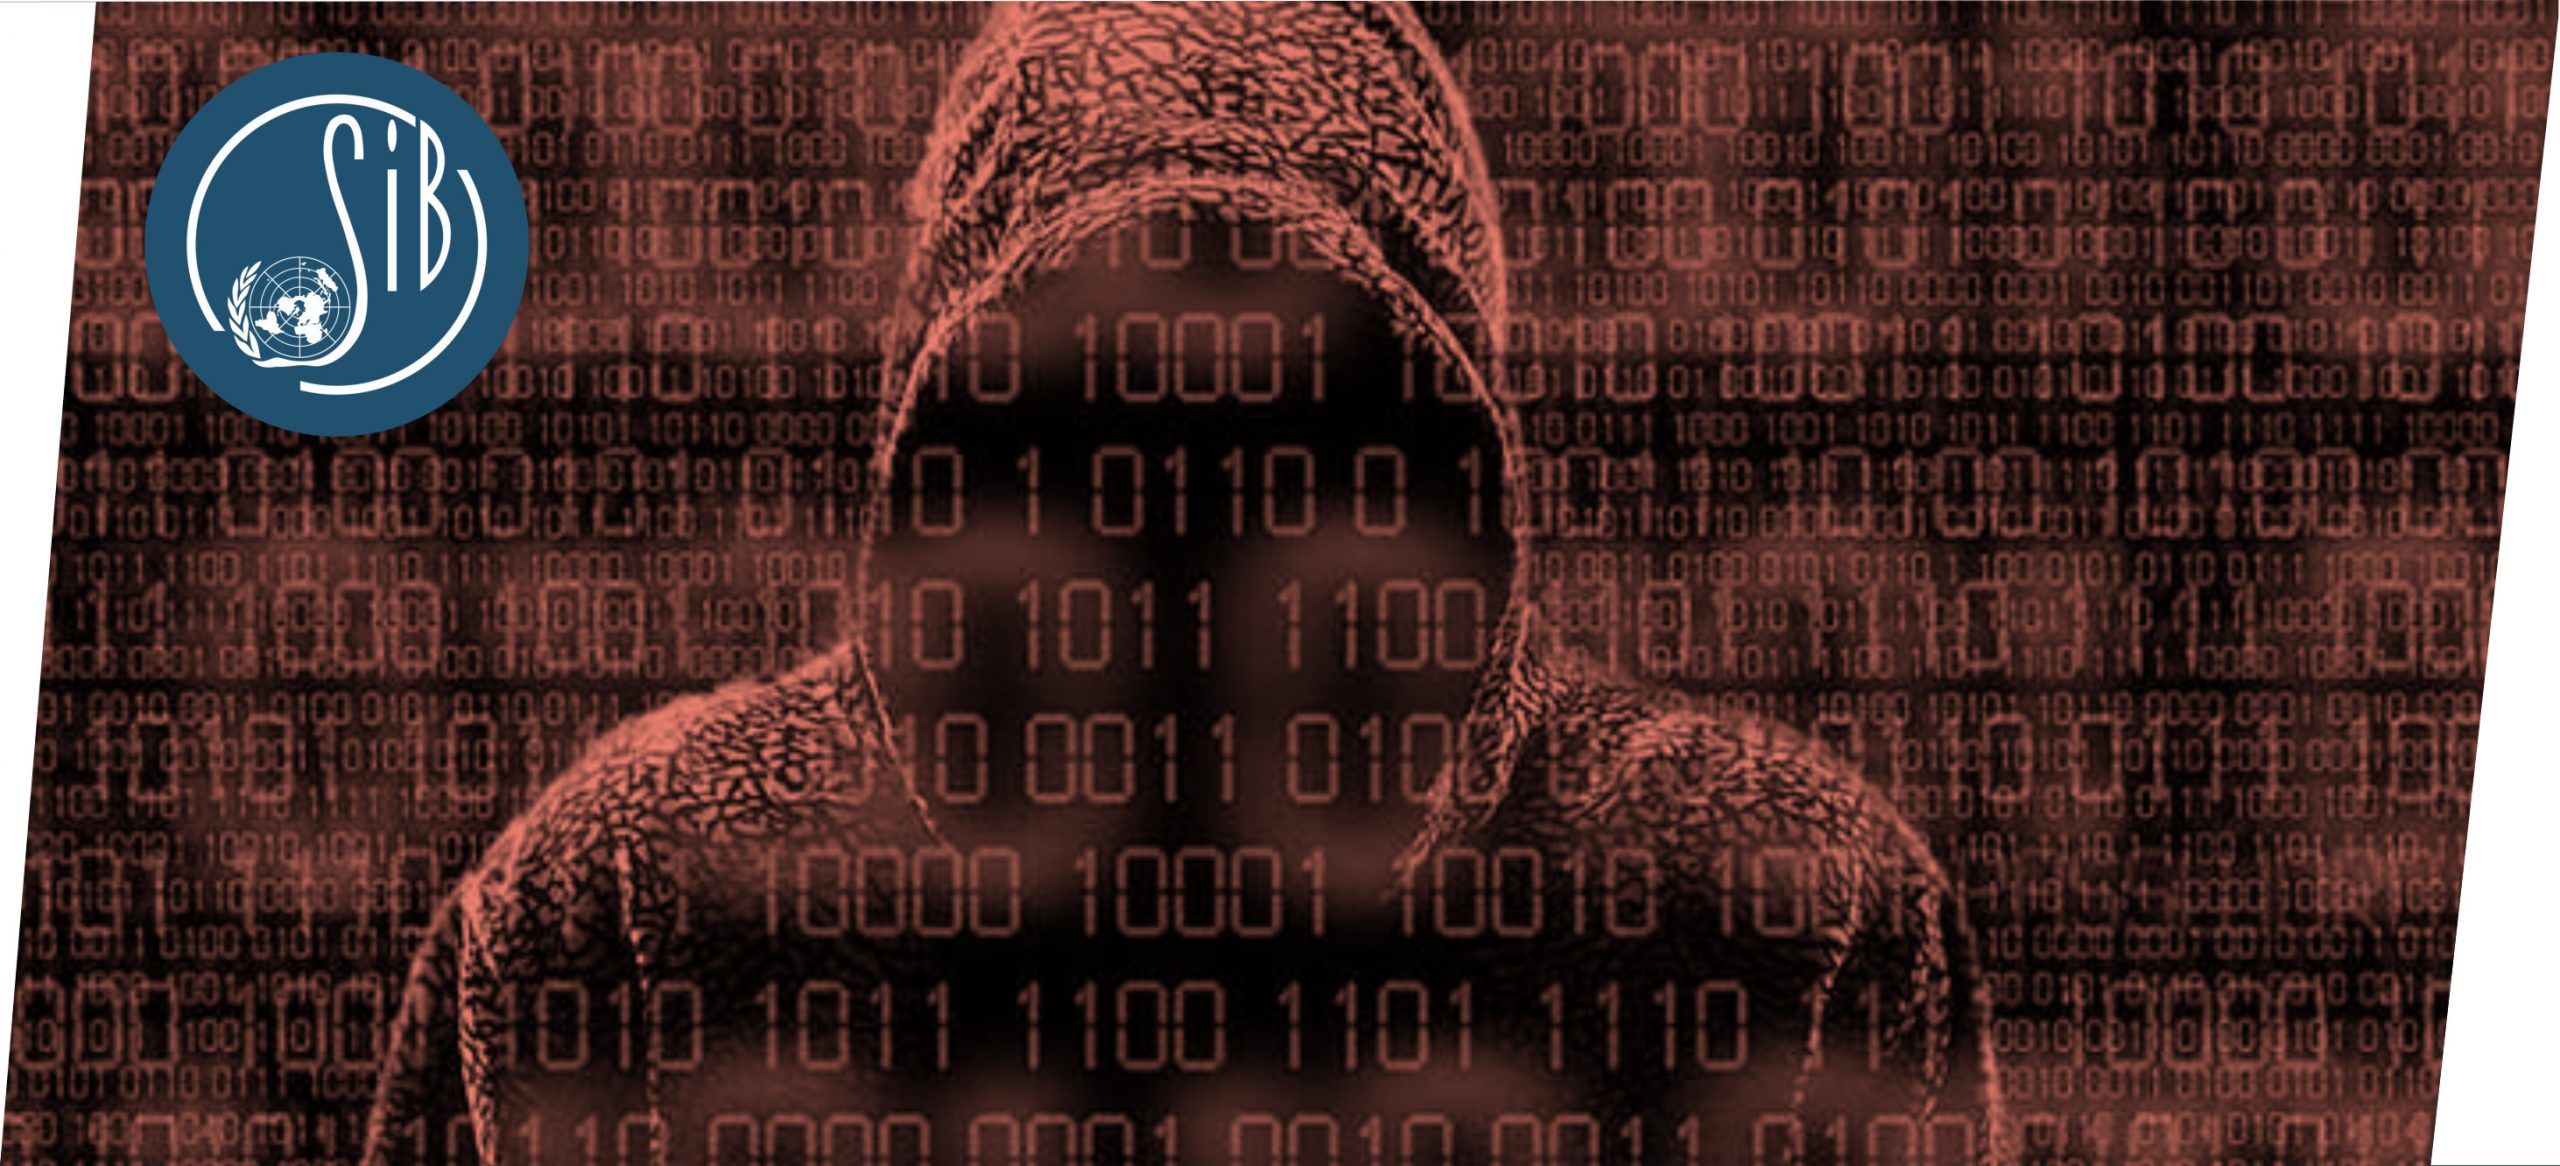 Cyberoorlog: van Chinese hackers tot Russische inmenging